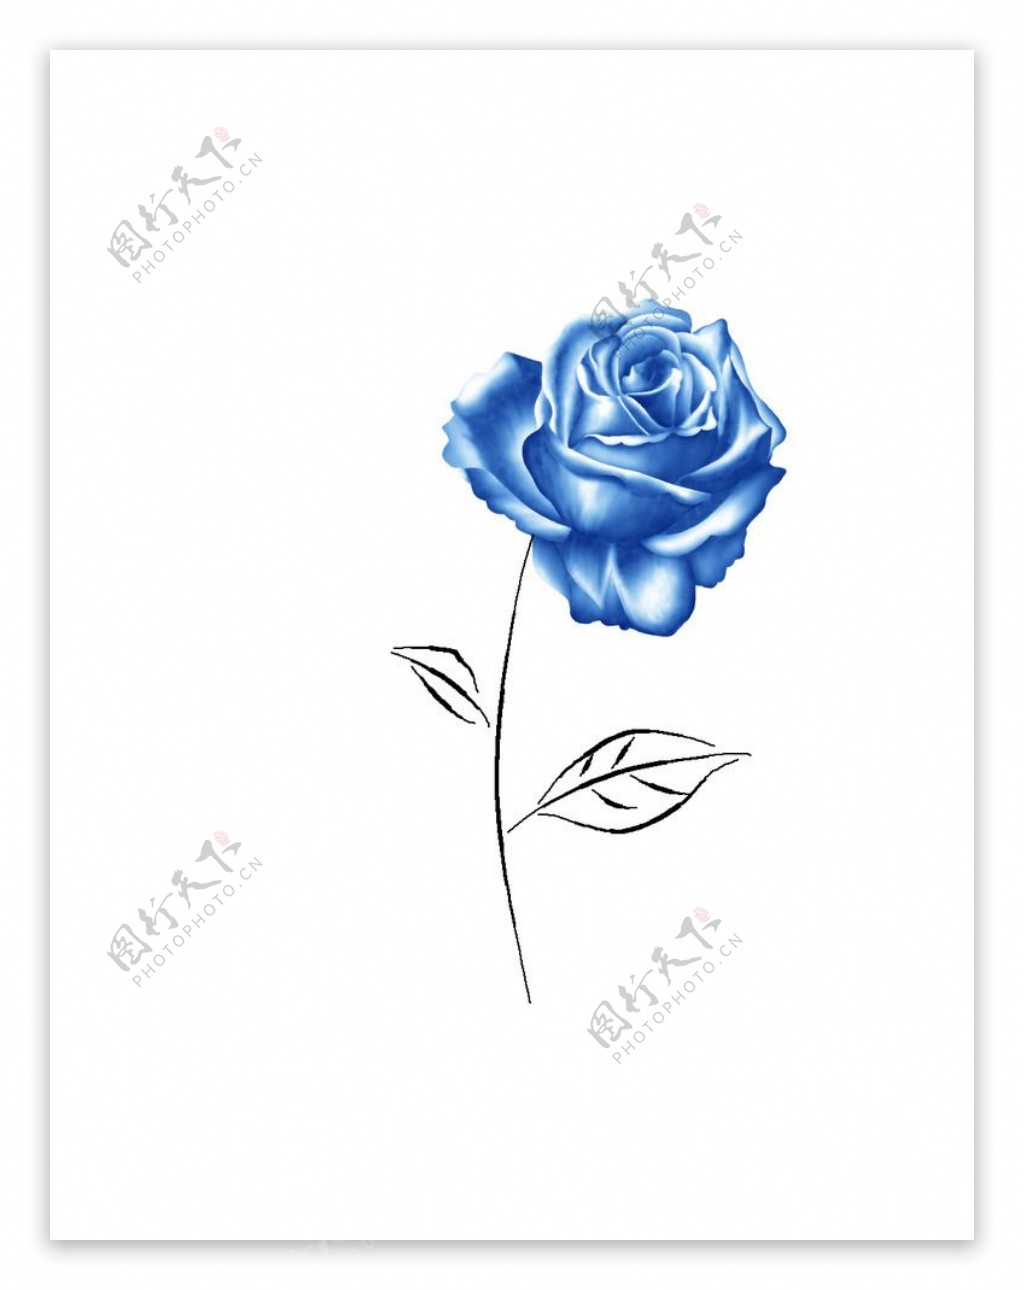 蓝色妖姬玫瑰